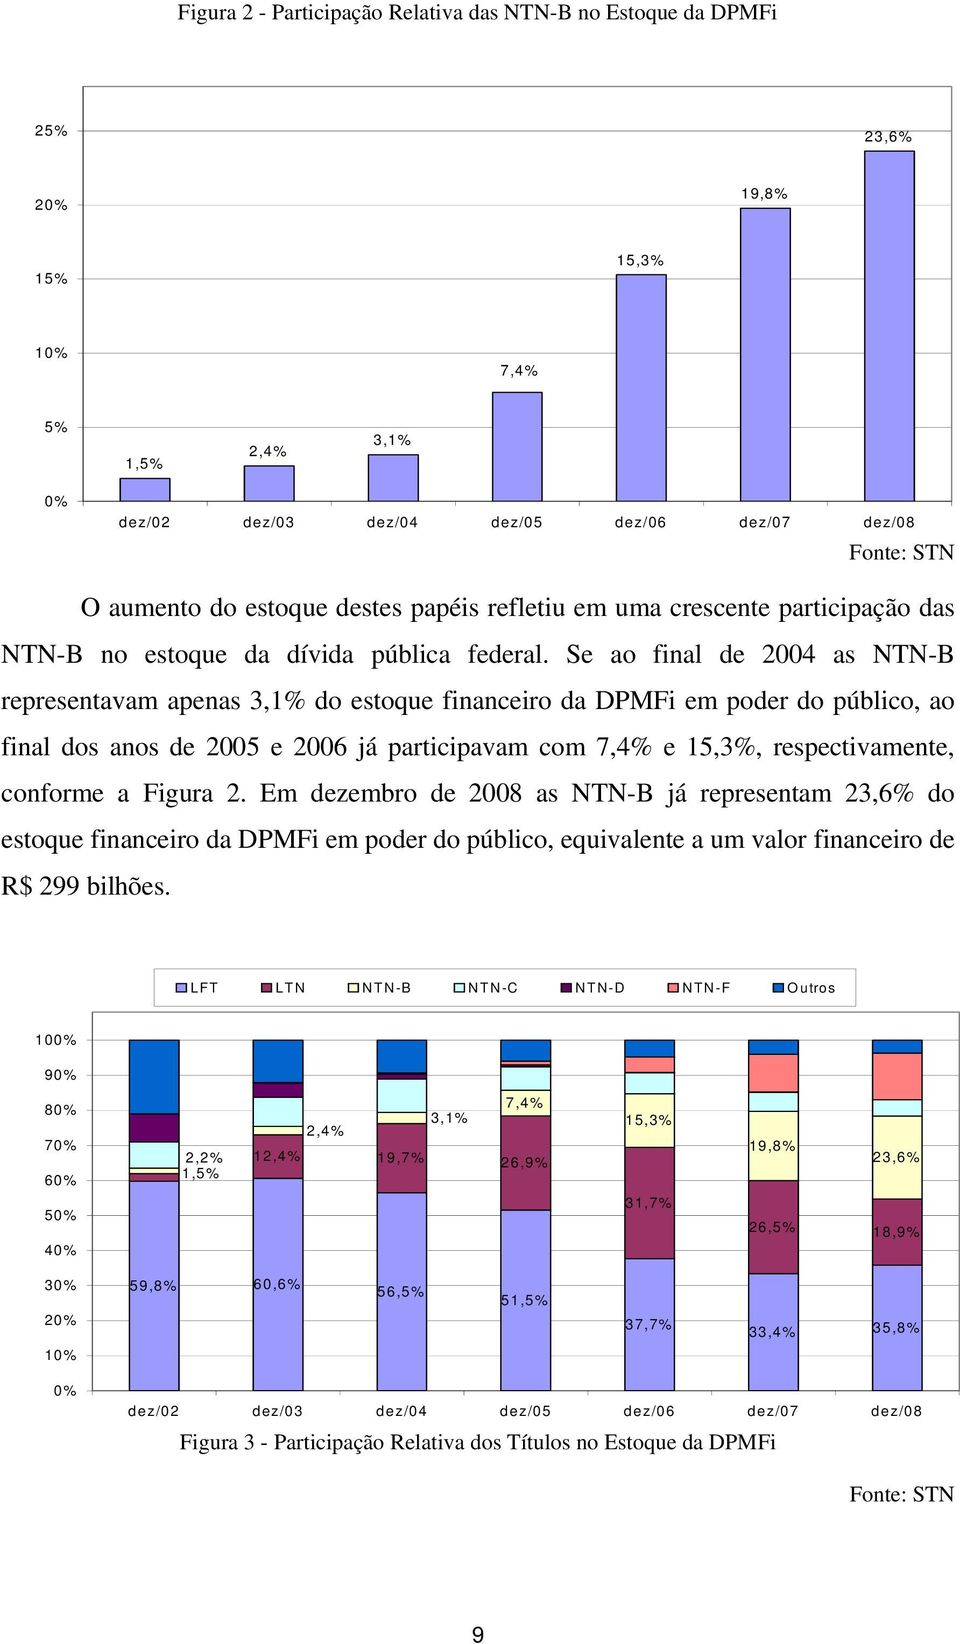 Se ao final de 2004 as NTN-B representavam apenas 3,1% do estoque financeiro da DPMFi em poder do público, ao final dos anos de 2005 e 2006 já participavam com 7,4% e 15,3%, respectivamente, conforme